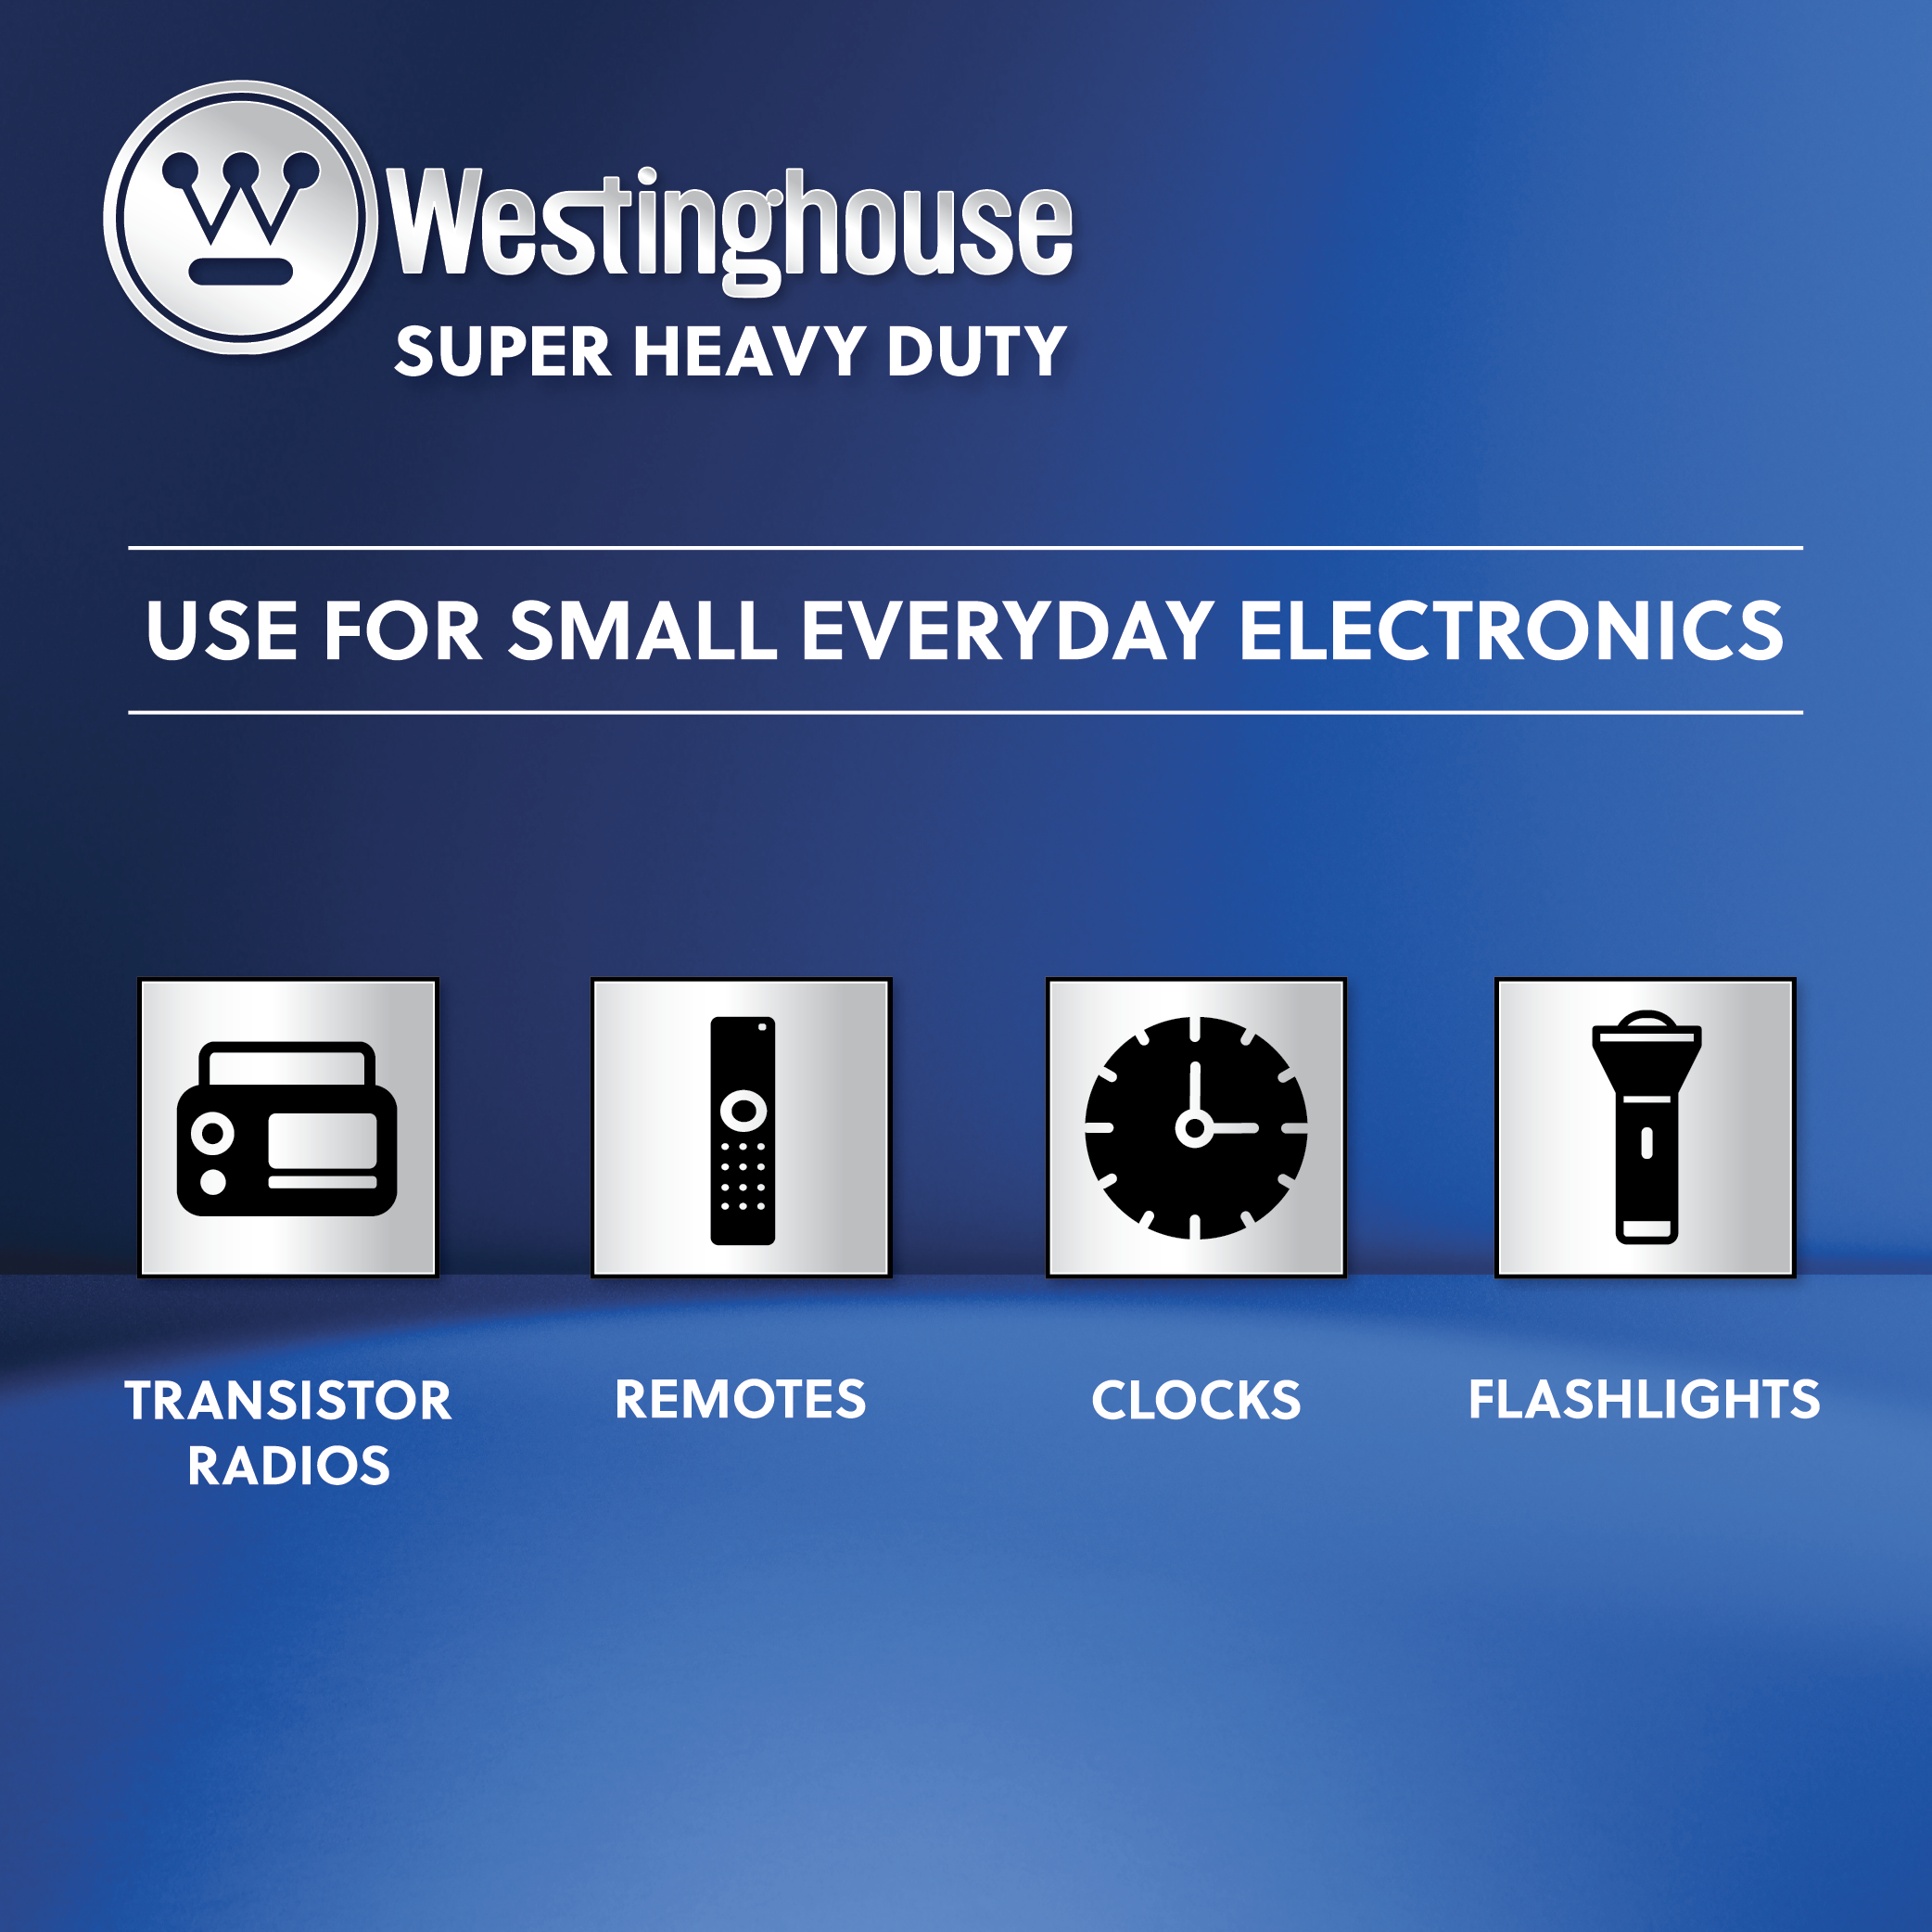 Westinghouse AA Super Heavy Duty